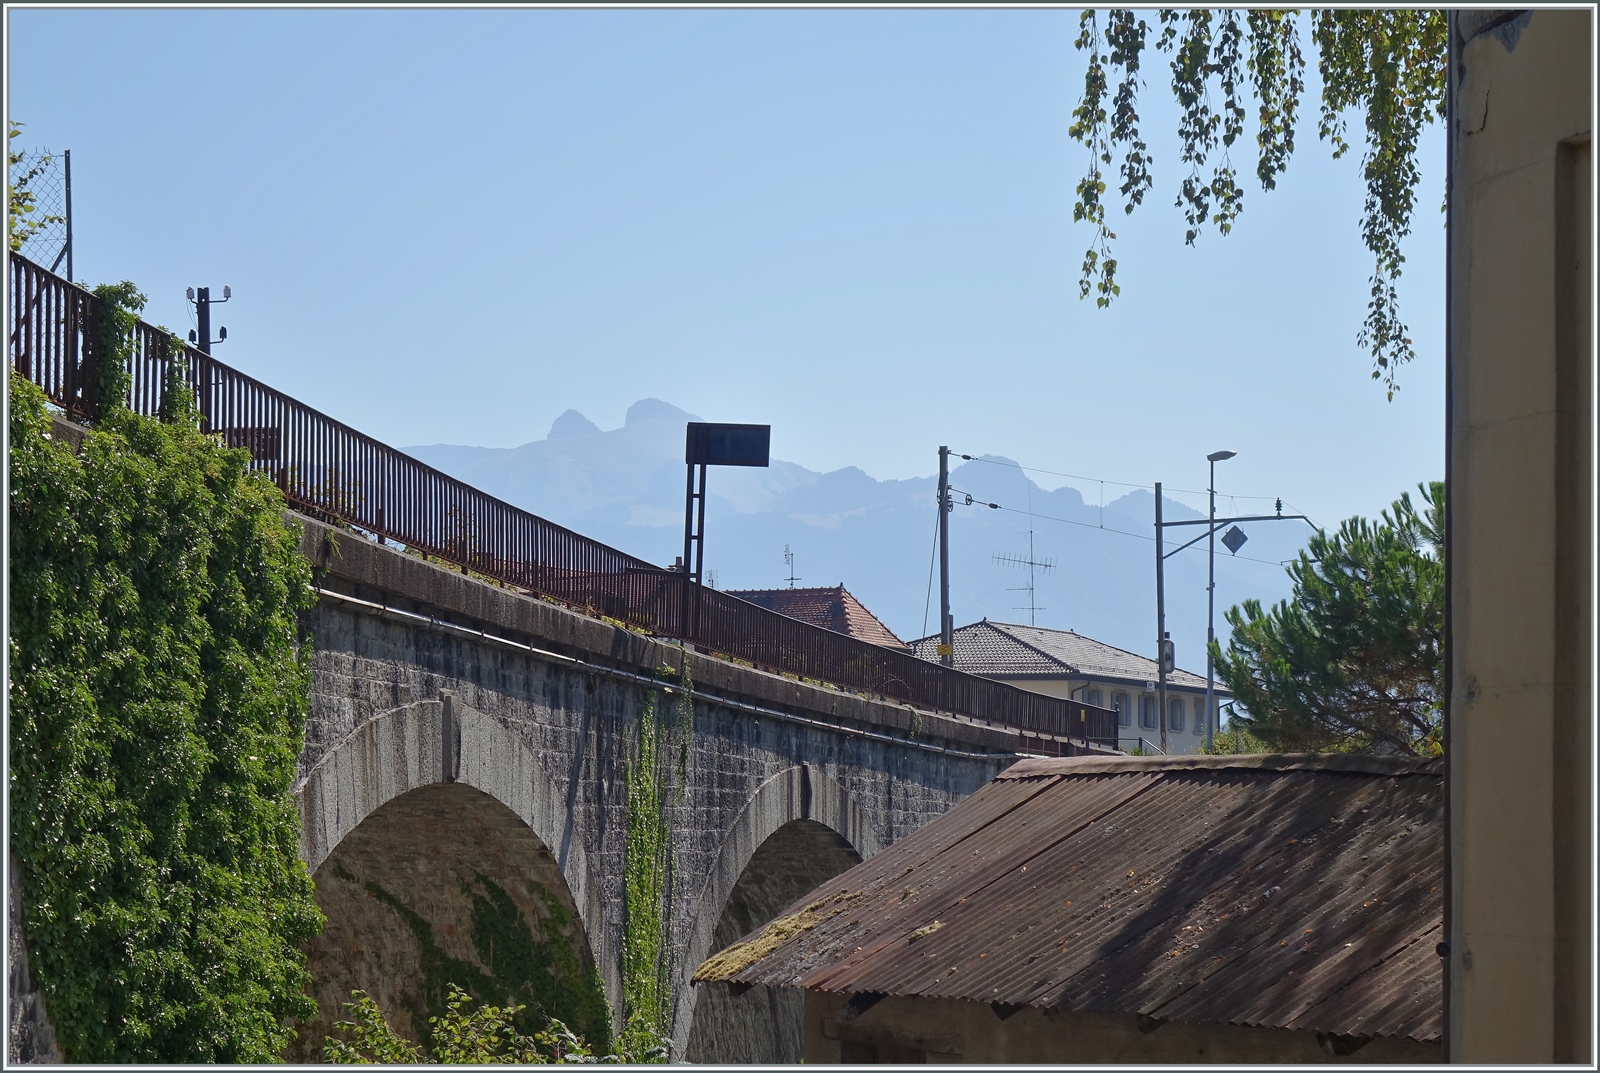 Ein Blick auf die Strecke Evian - St-Gingolph an der Grenze zur Schweiz in St-Gingolph (France).
Im rechten Bildteil sind bereits die Fahrleitungs-Masten der SBB Strecke nach St-Maurice zu erkennen.

16. Aug. 2022